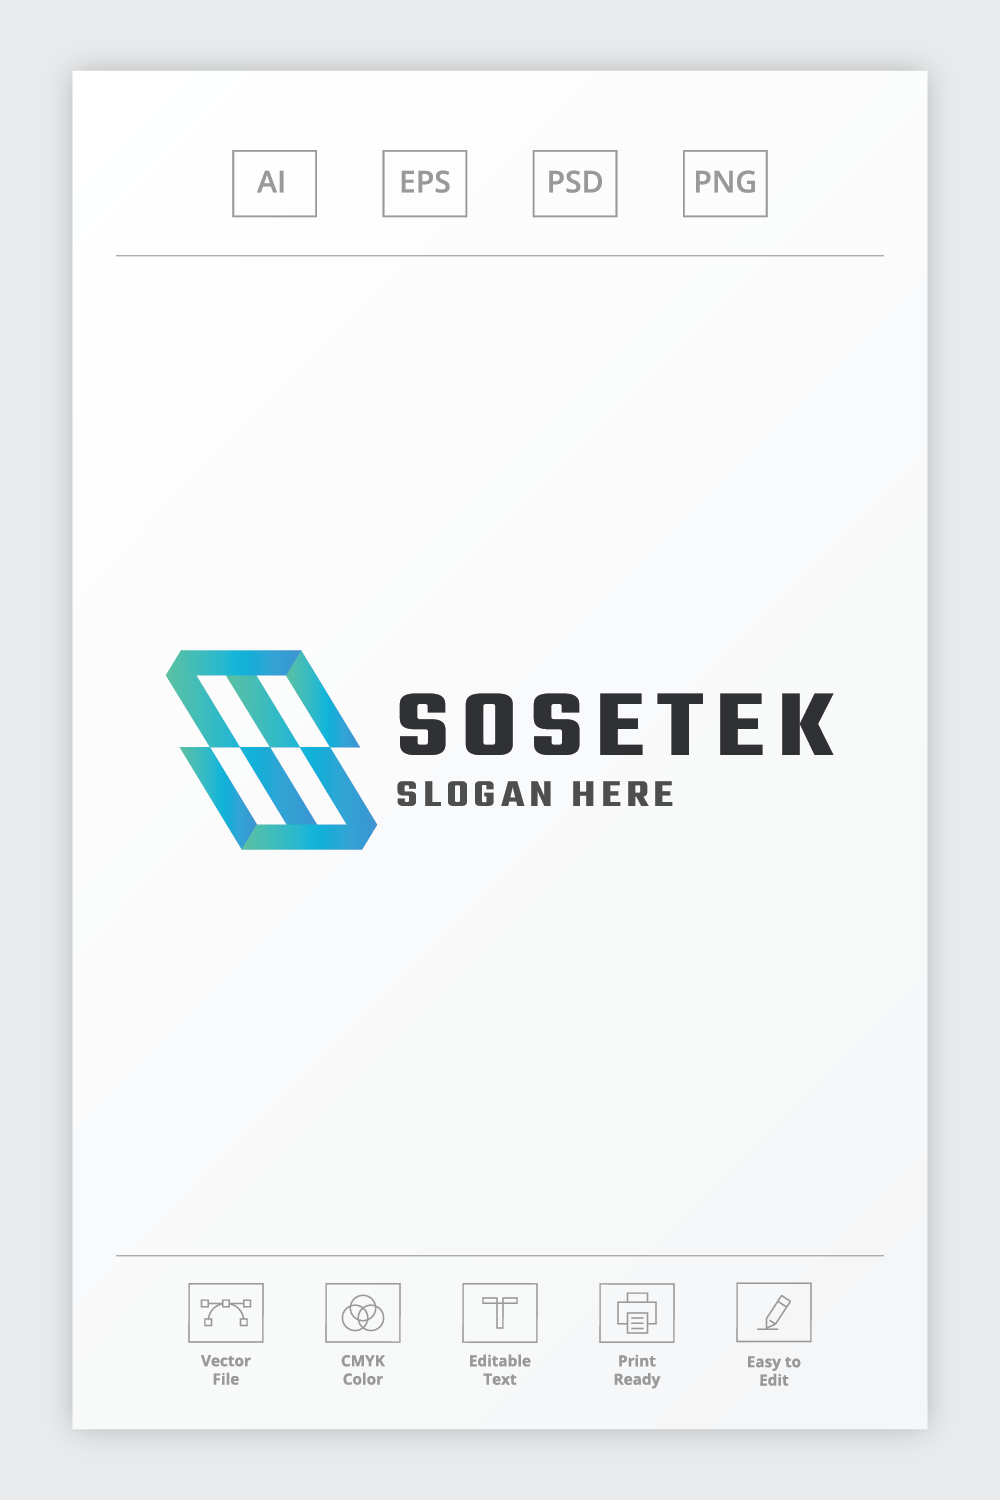 Sosetek Letter S Logo pinterest preview image.